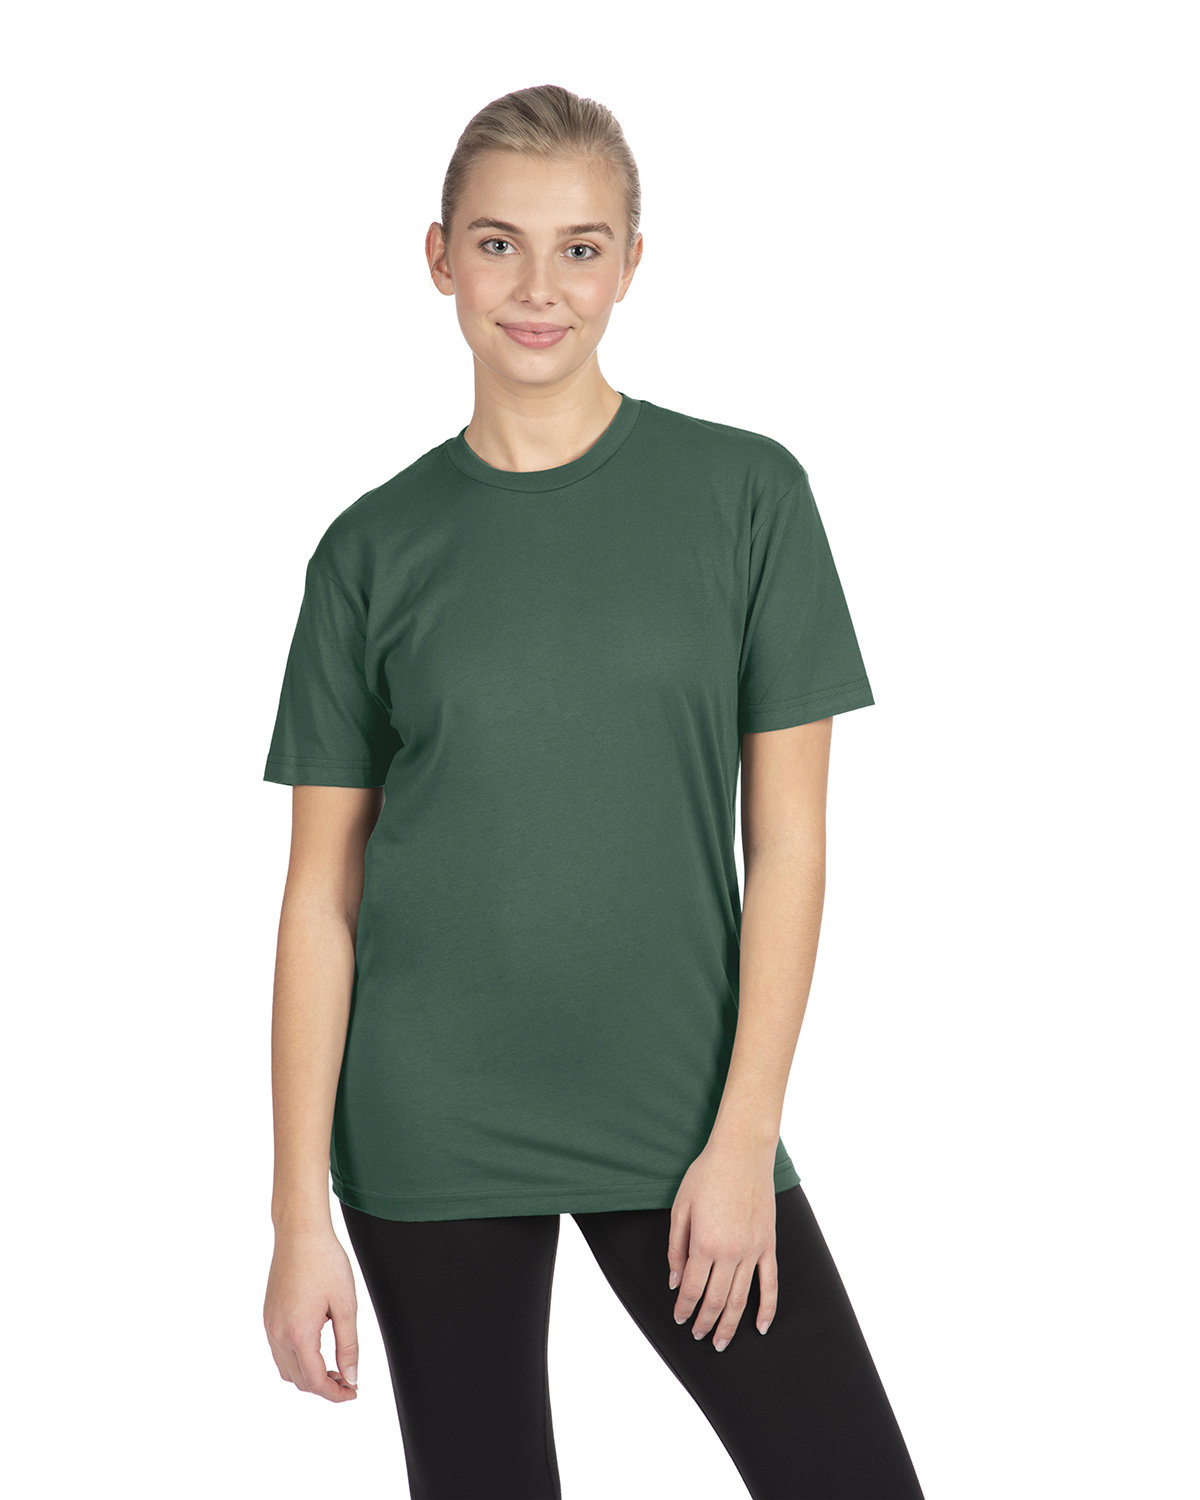 Next Level Unisex Cotton T-Shirt ROYAL PINE 